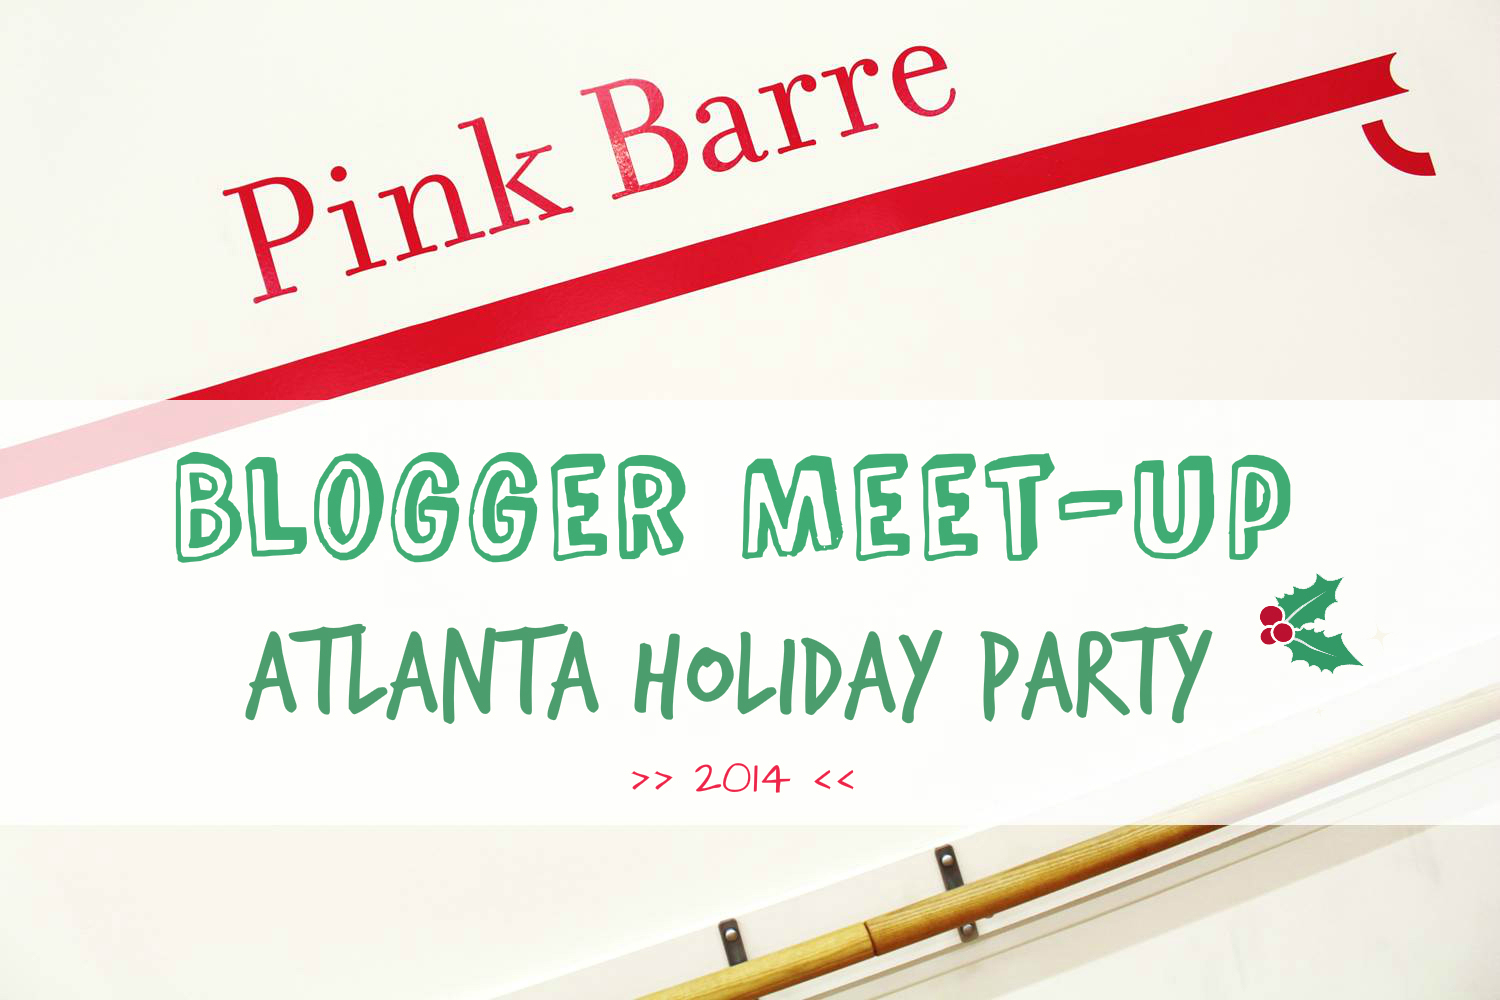 Blog Networking: Holiday Atlanta Blogger Party